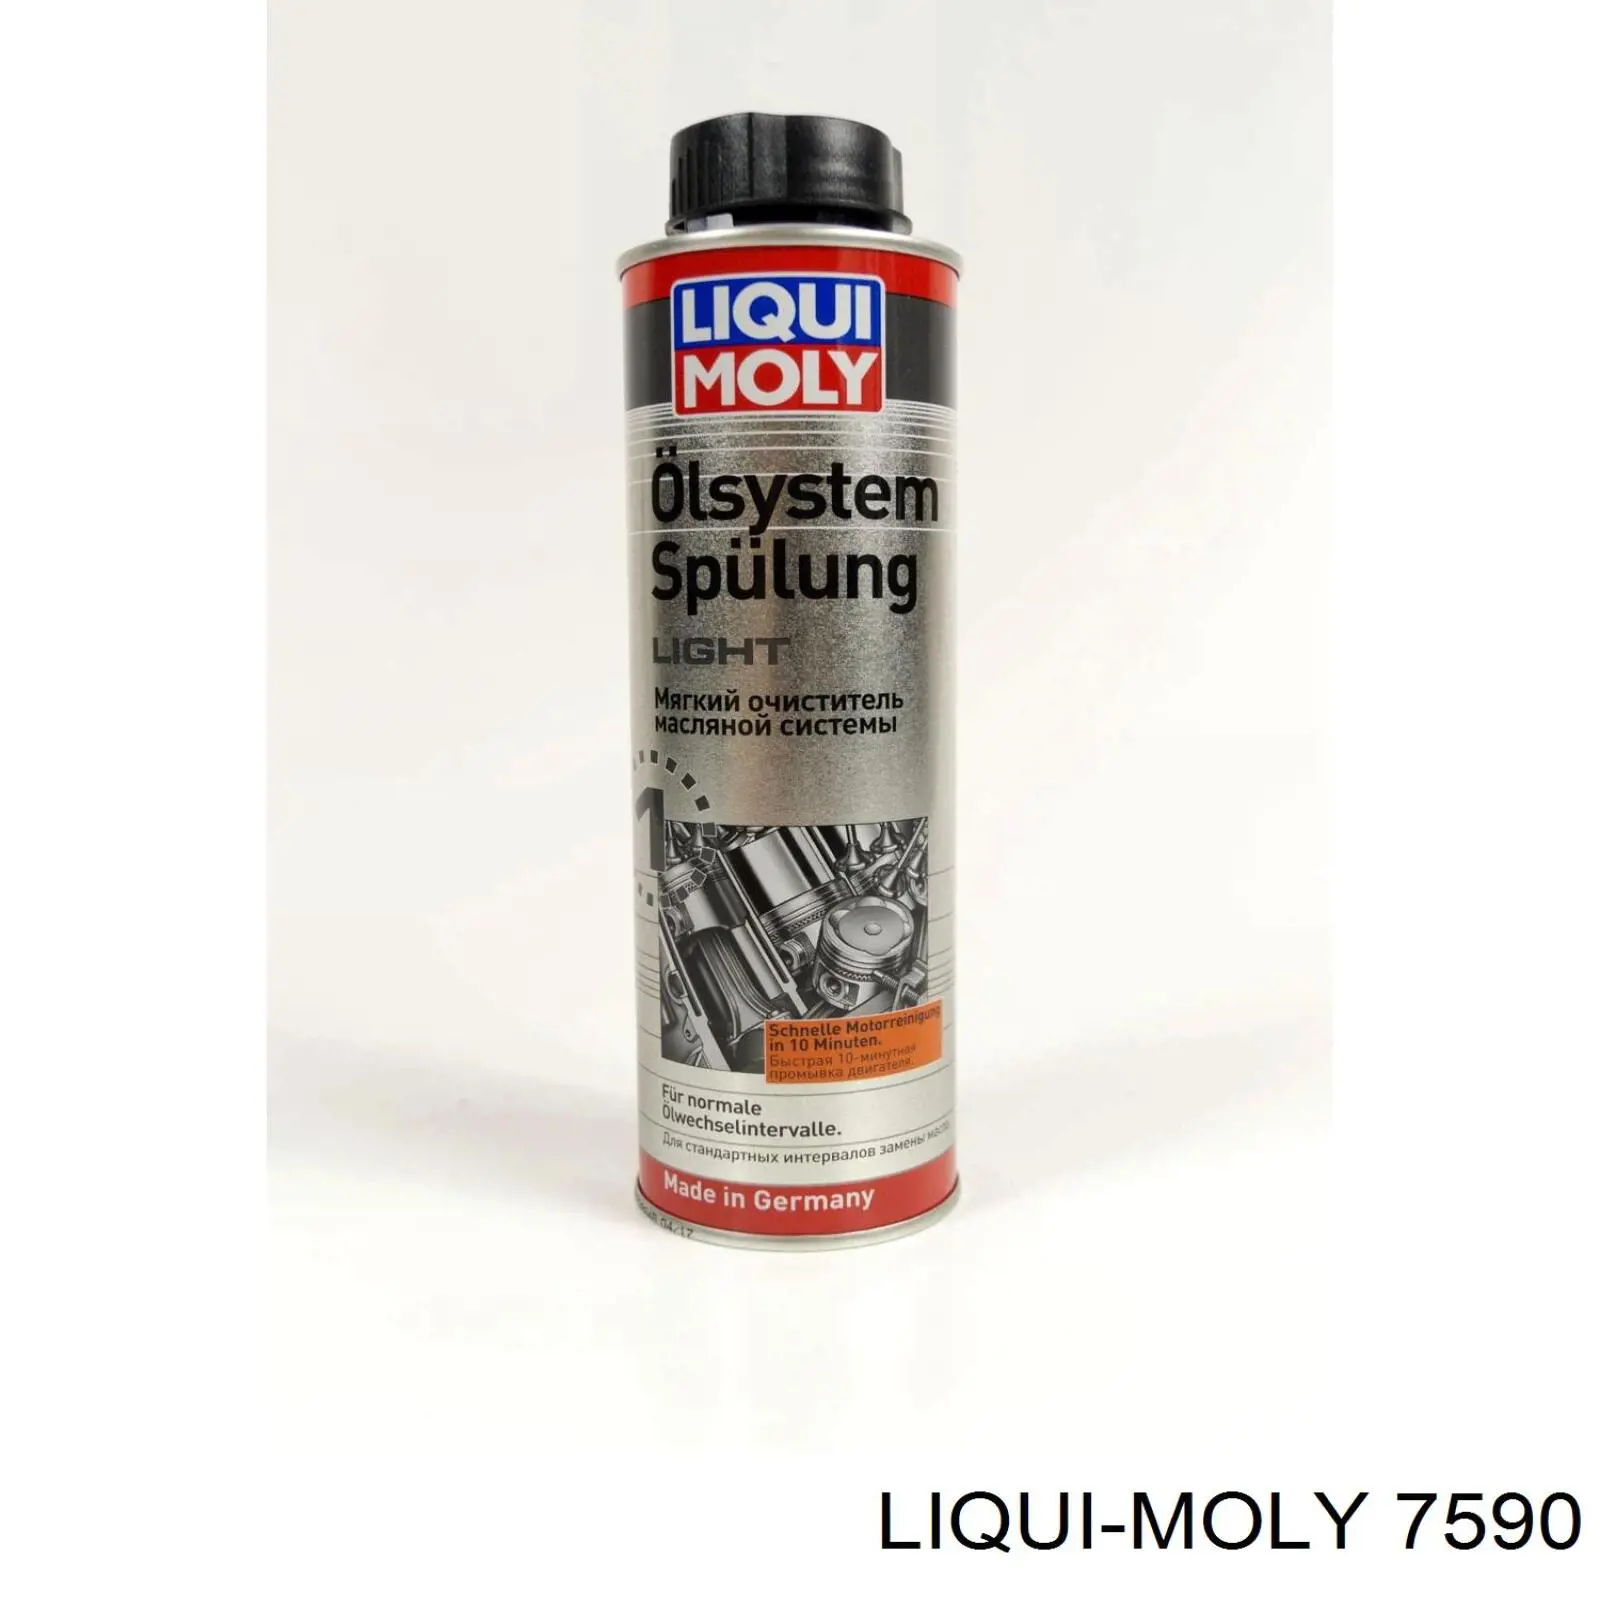 7590 Liqui Moly очиститель масляной системы Очистители масляной системы, 0.3л